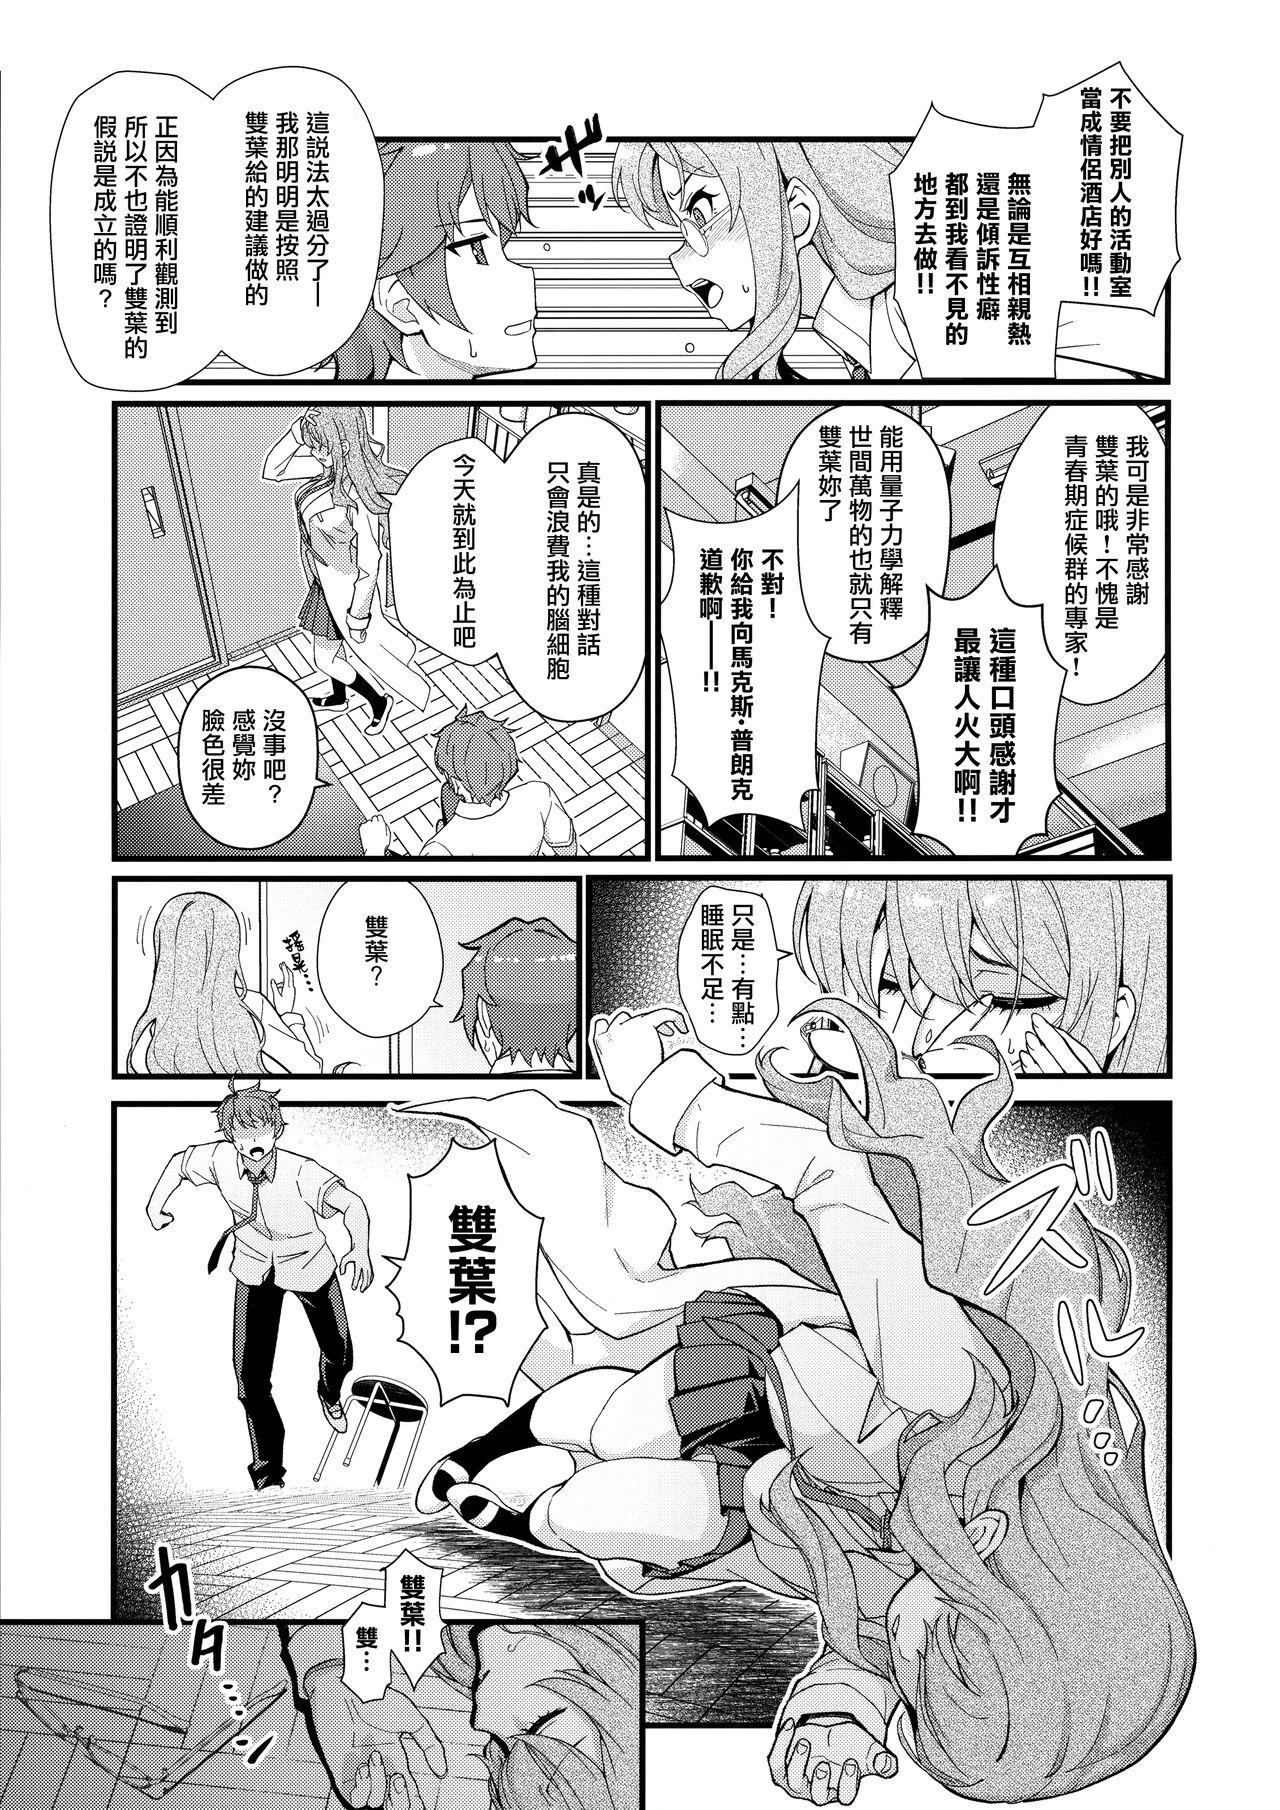 Edging MULTI REALITY - Seishun buta yarou wa bunny girl senpai no yume o minai Balls - Page 5